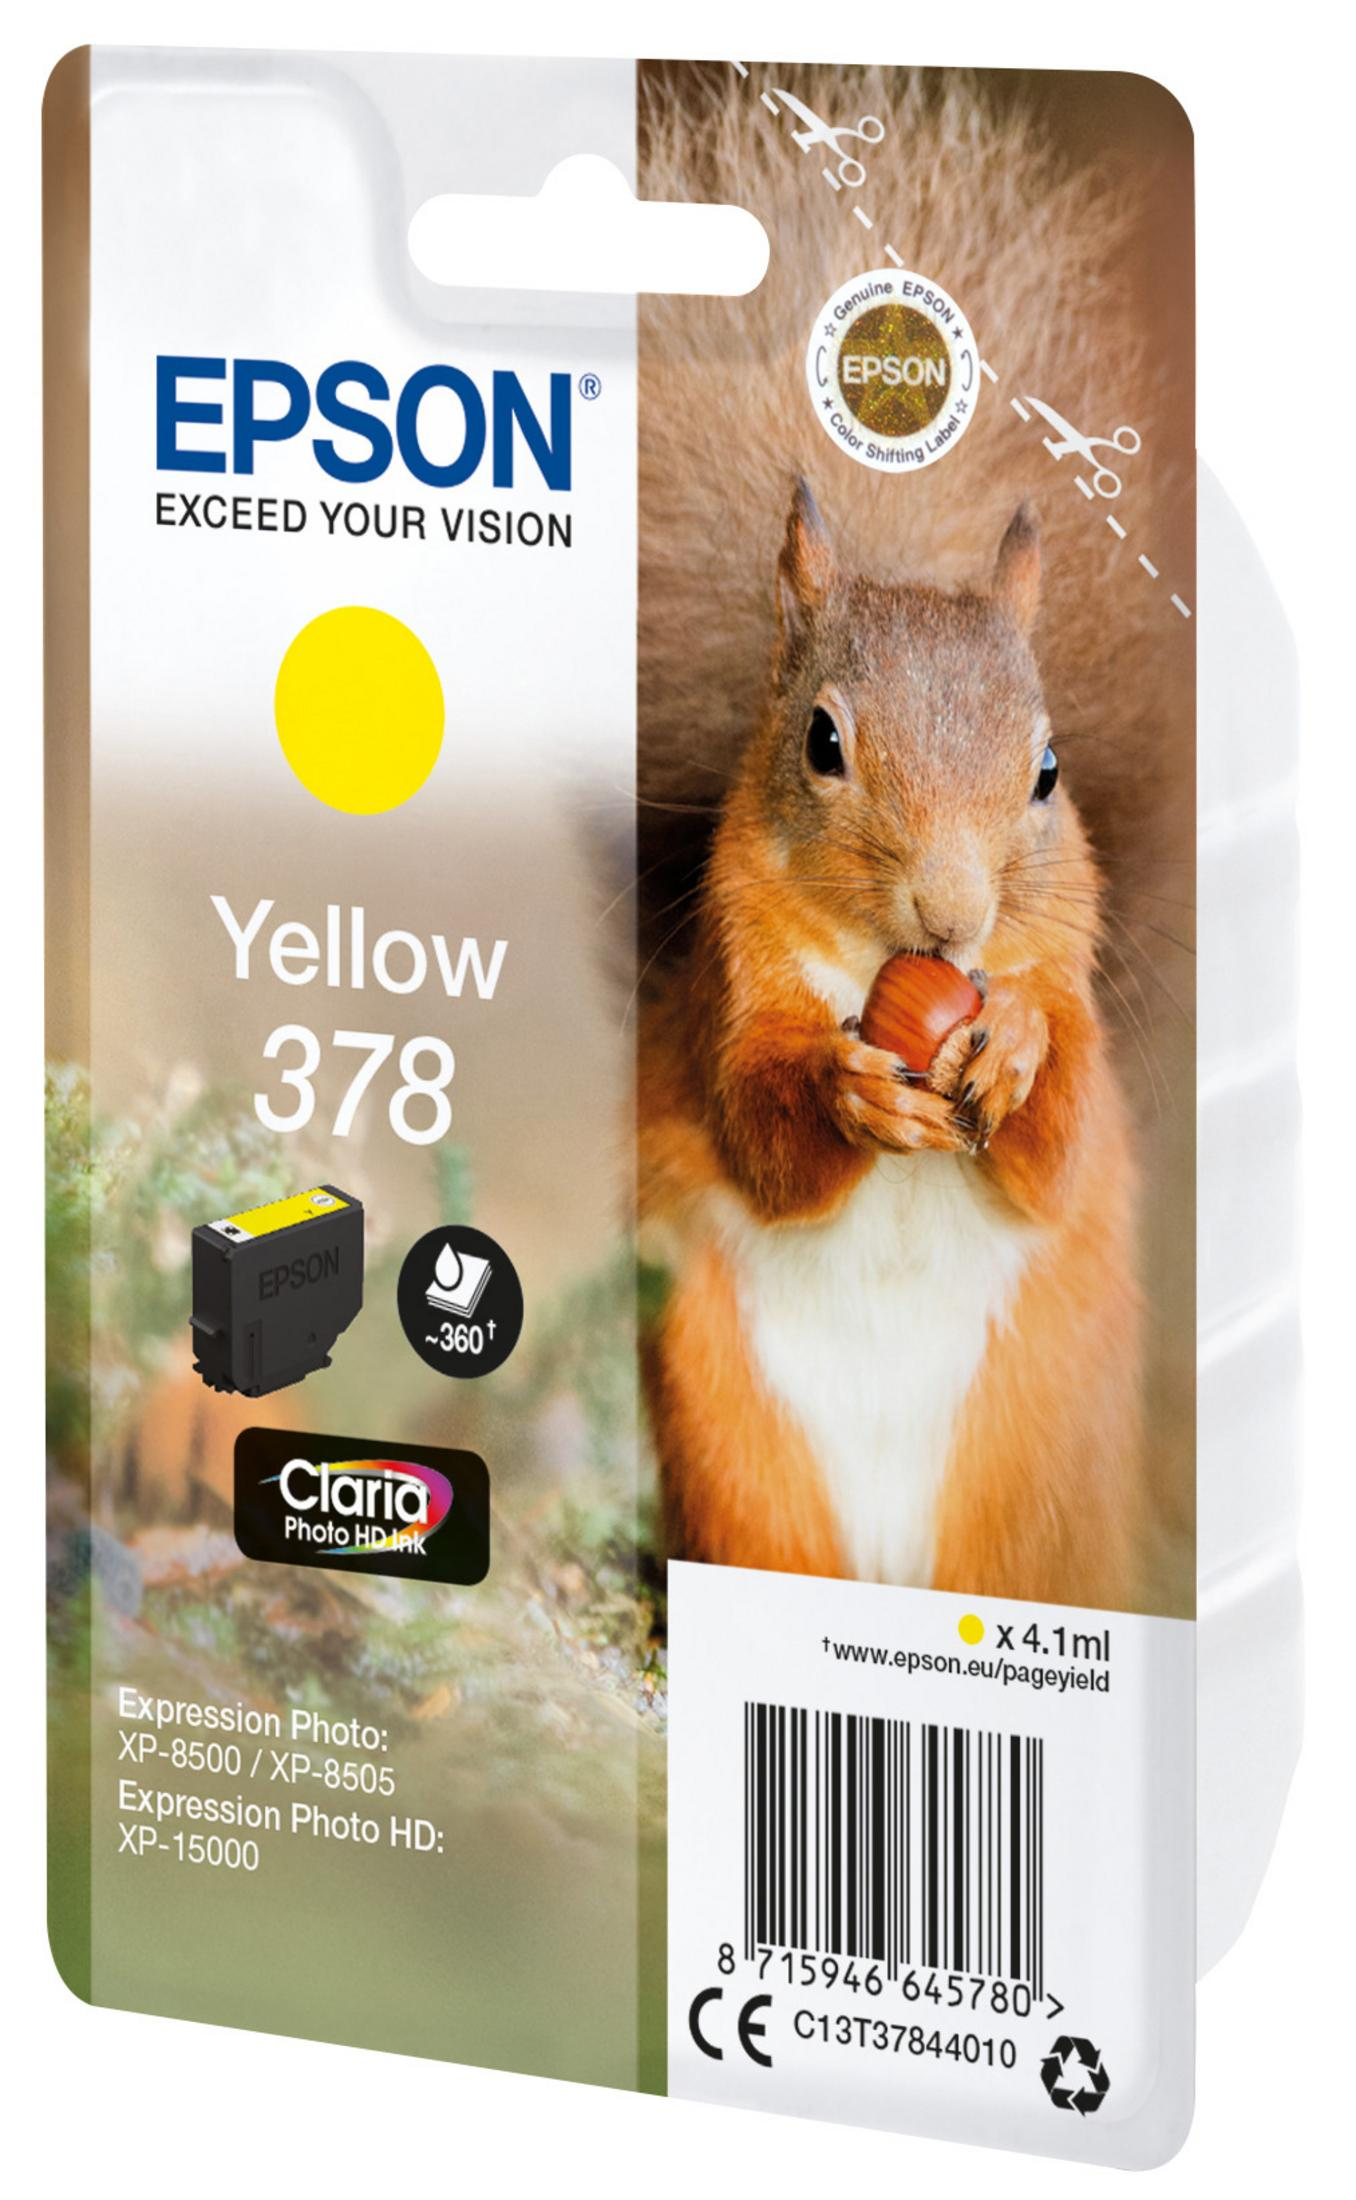 EPSON 378 Tinte (C13T37844010) yellow